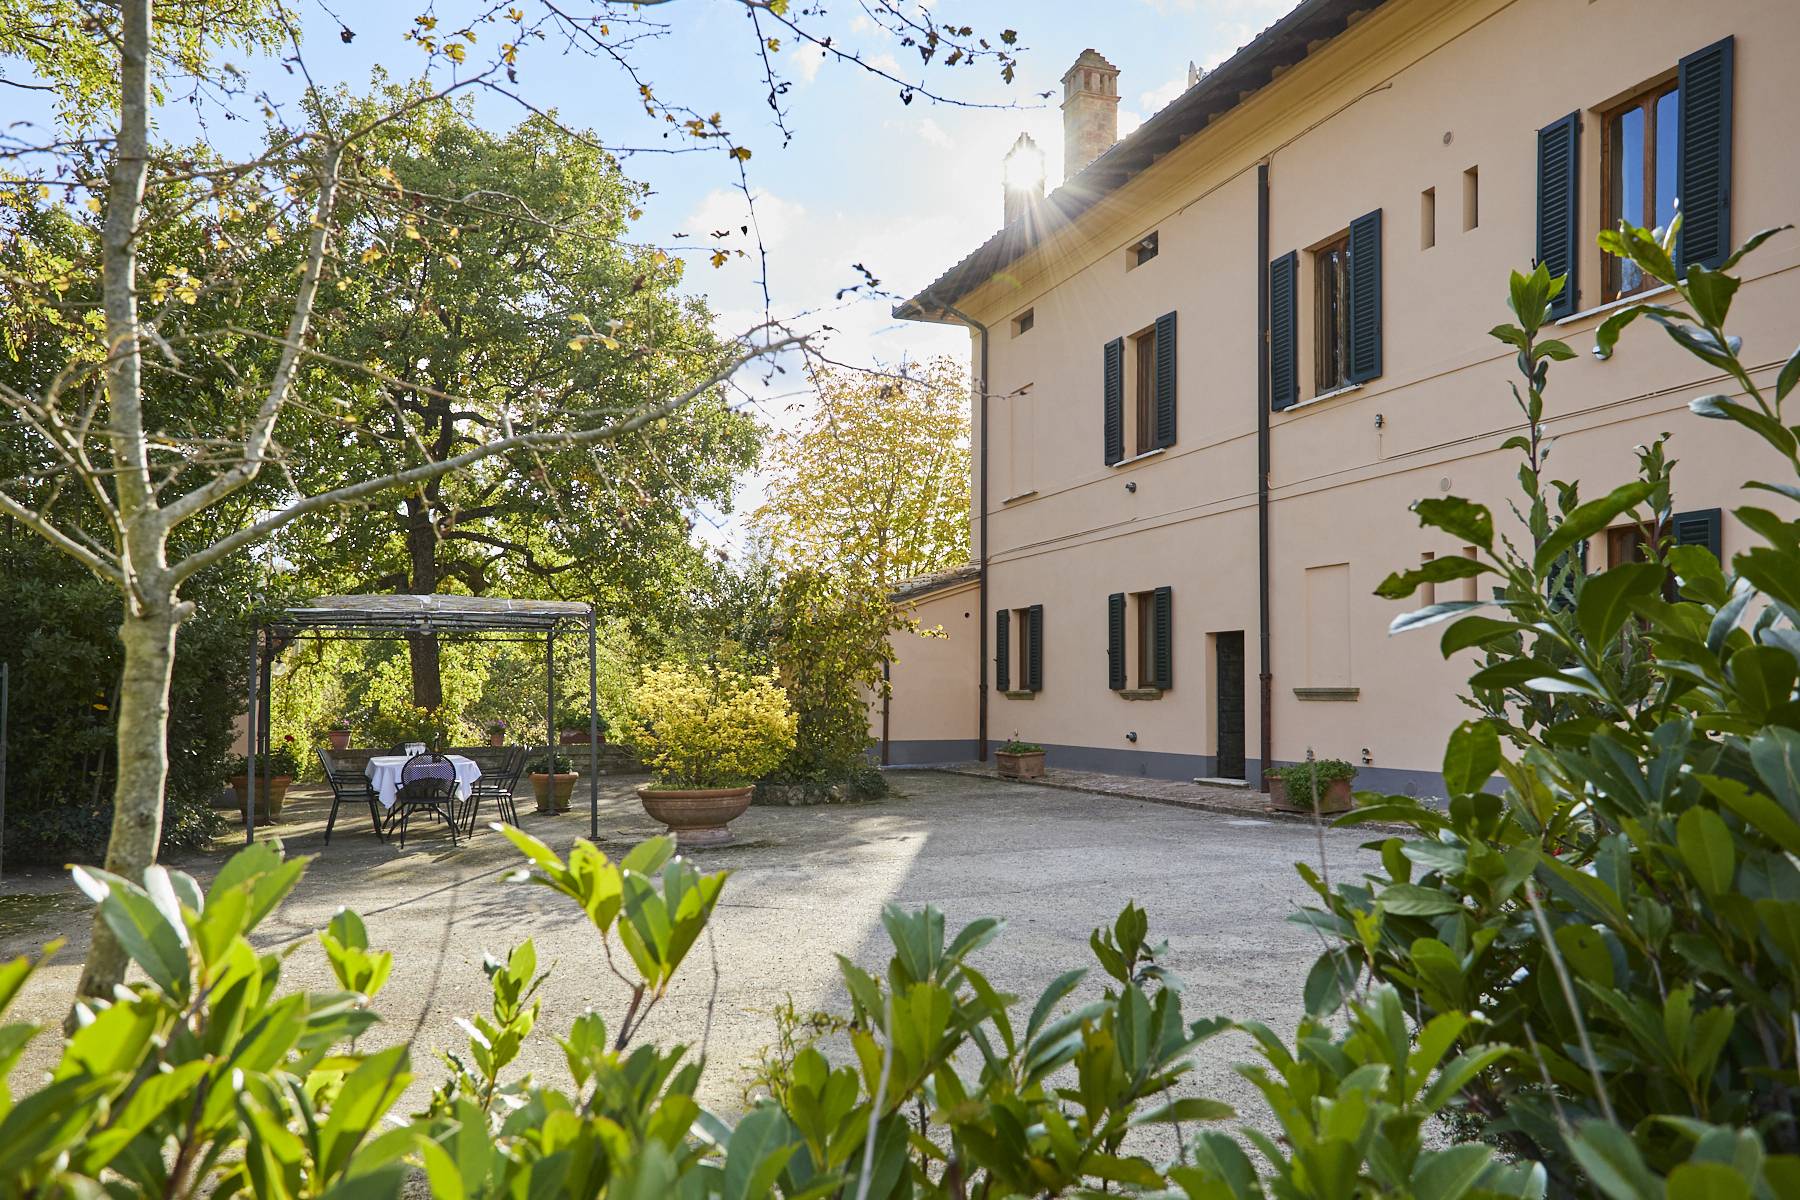 Villa in Vendita a Montepulciano: 5 locali, 860 mq - Foto 3